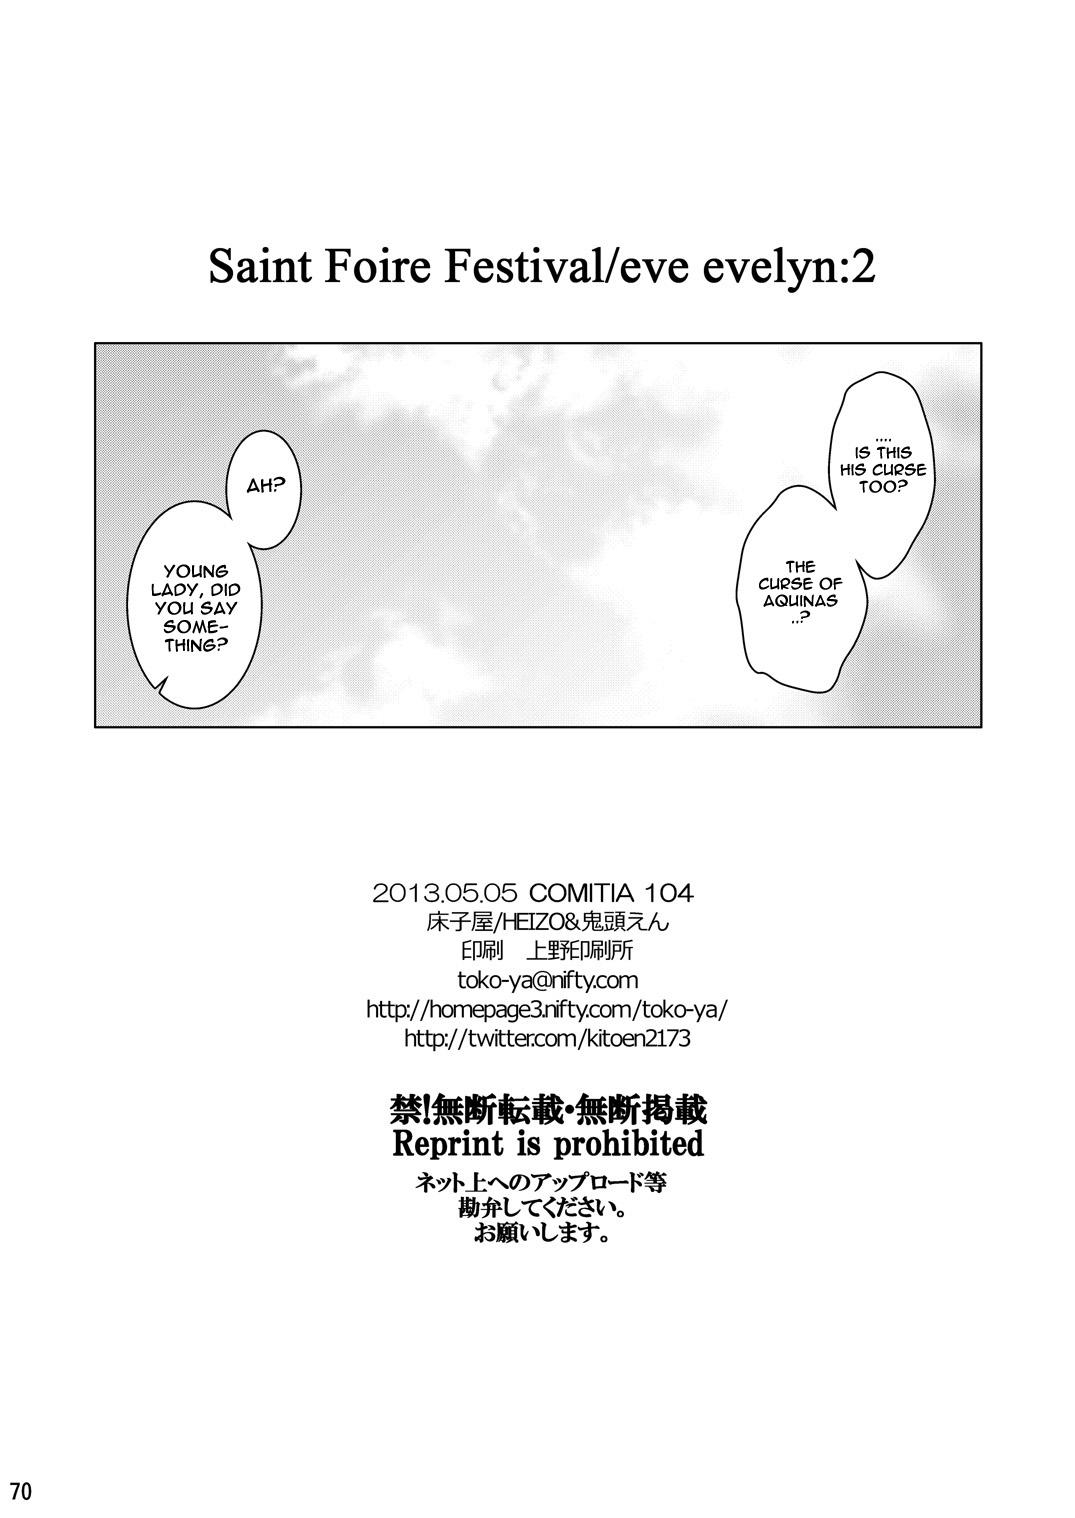 Saint Foire Festival Eve Evelyn:2 67